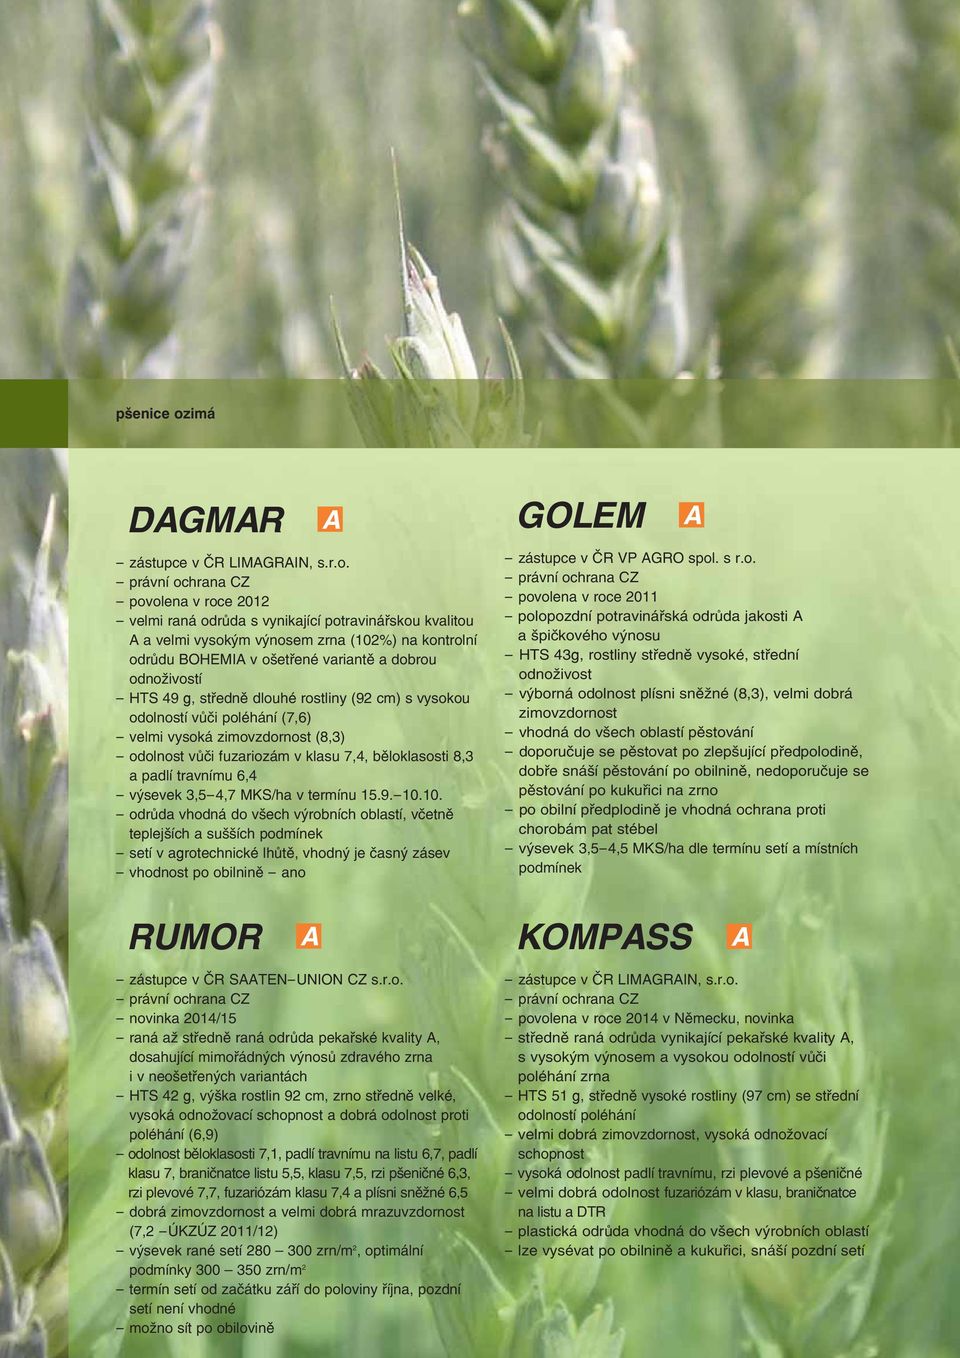 - povolena v roce 2012 - velmi raná odrůda s vynikající potravinářskou kvalitou a velmi vysokým výnosem zrna (102%) na kontrolní odrůdu BOHEMI v ošetřené variantě a dobrou odnoživostí - HTS 49 g,